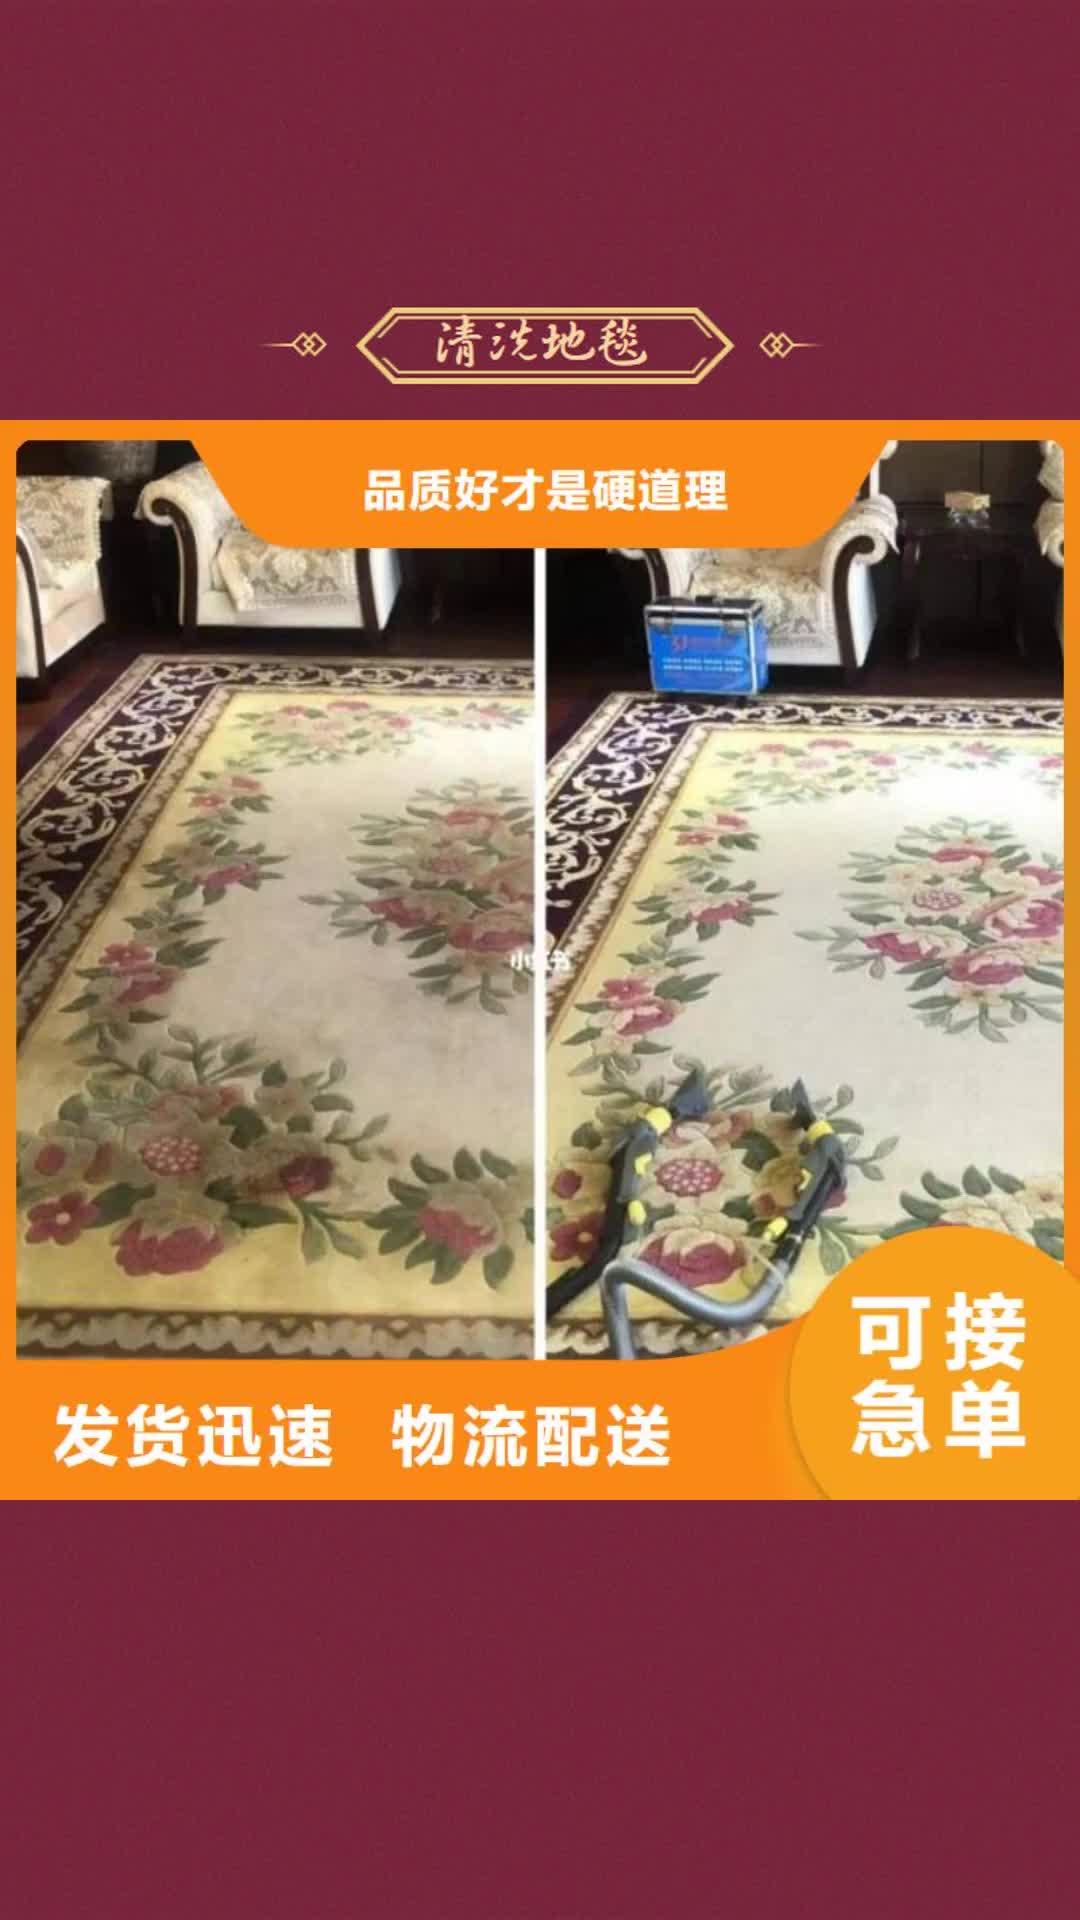 阜阳 清洗地毯 【北京地流平地面施工】质量不佳尽管来找我